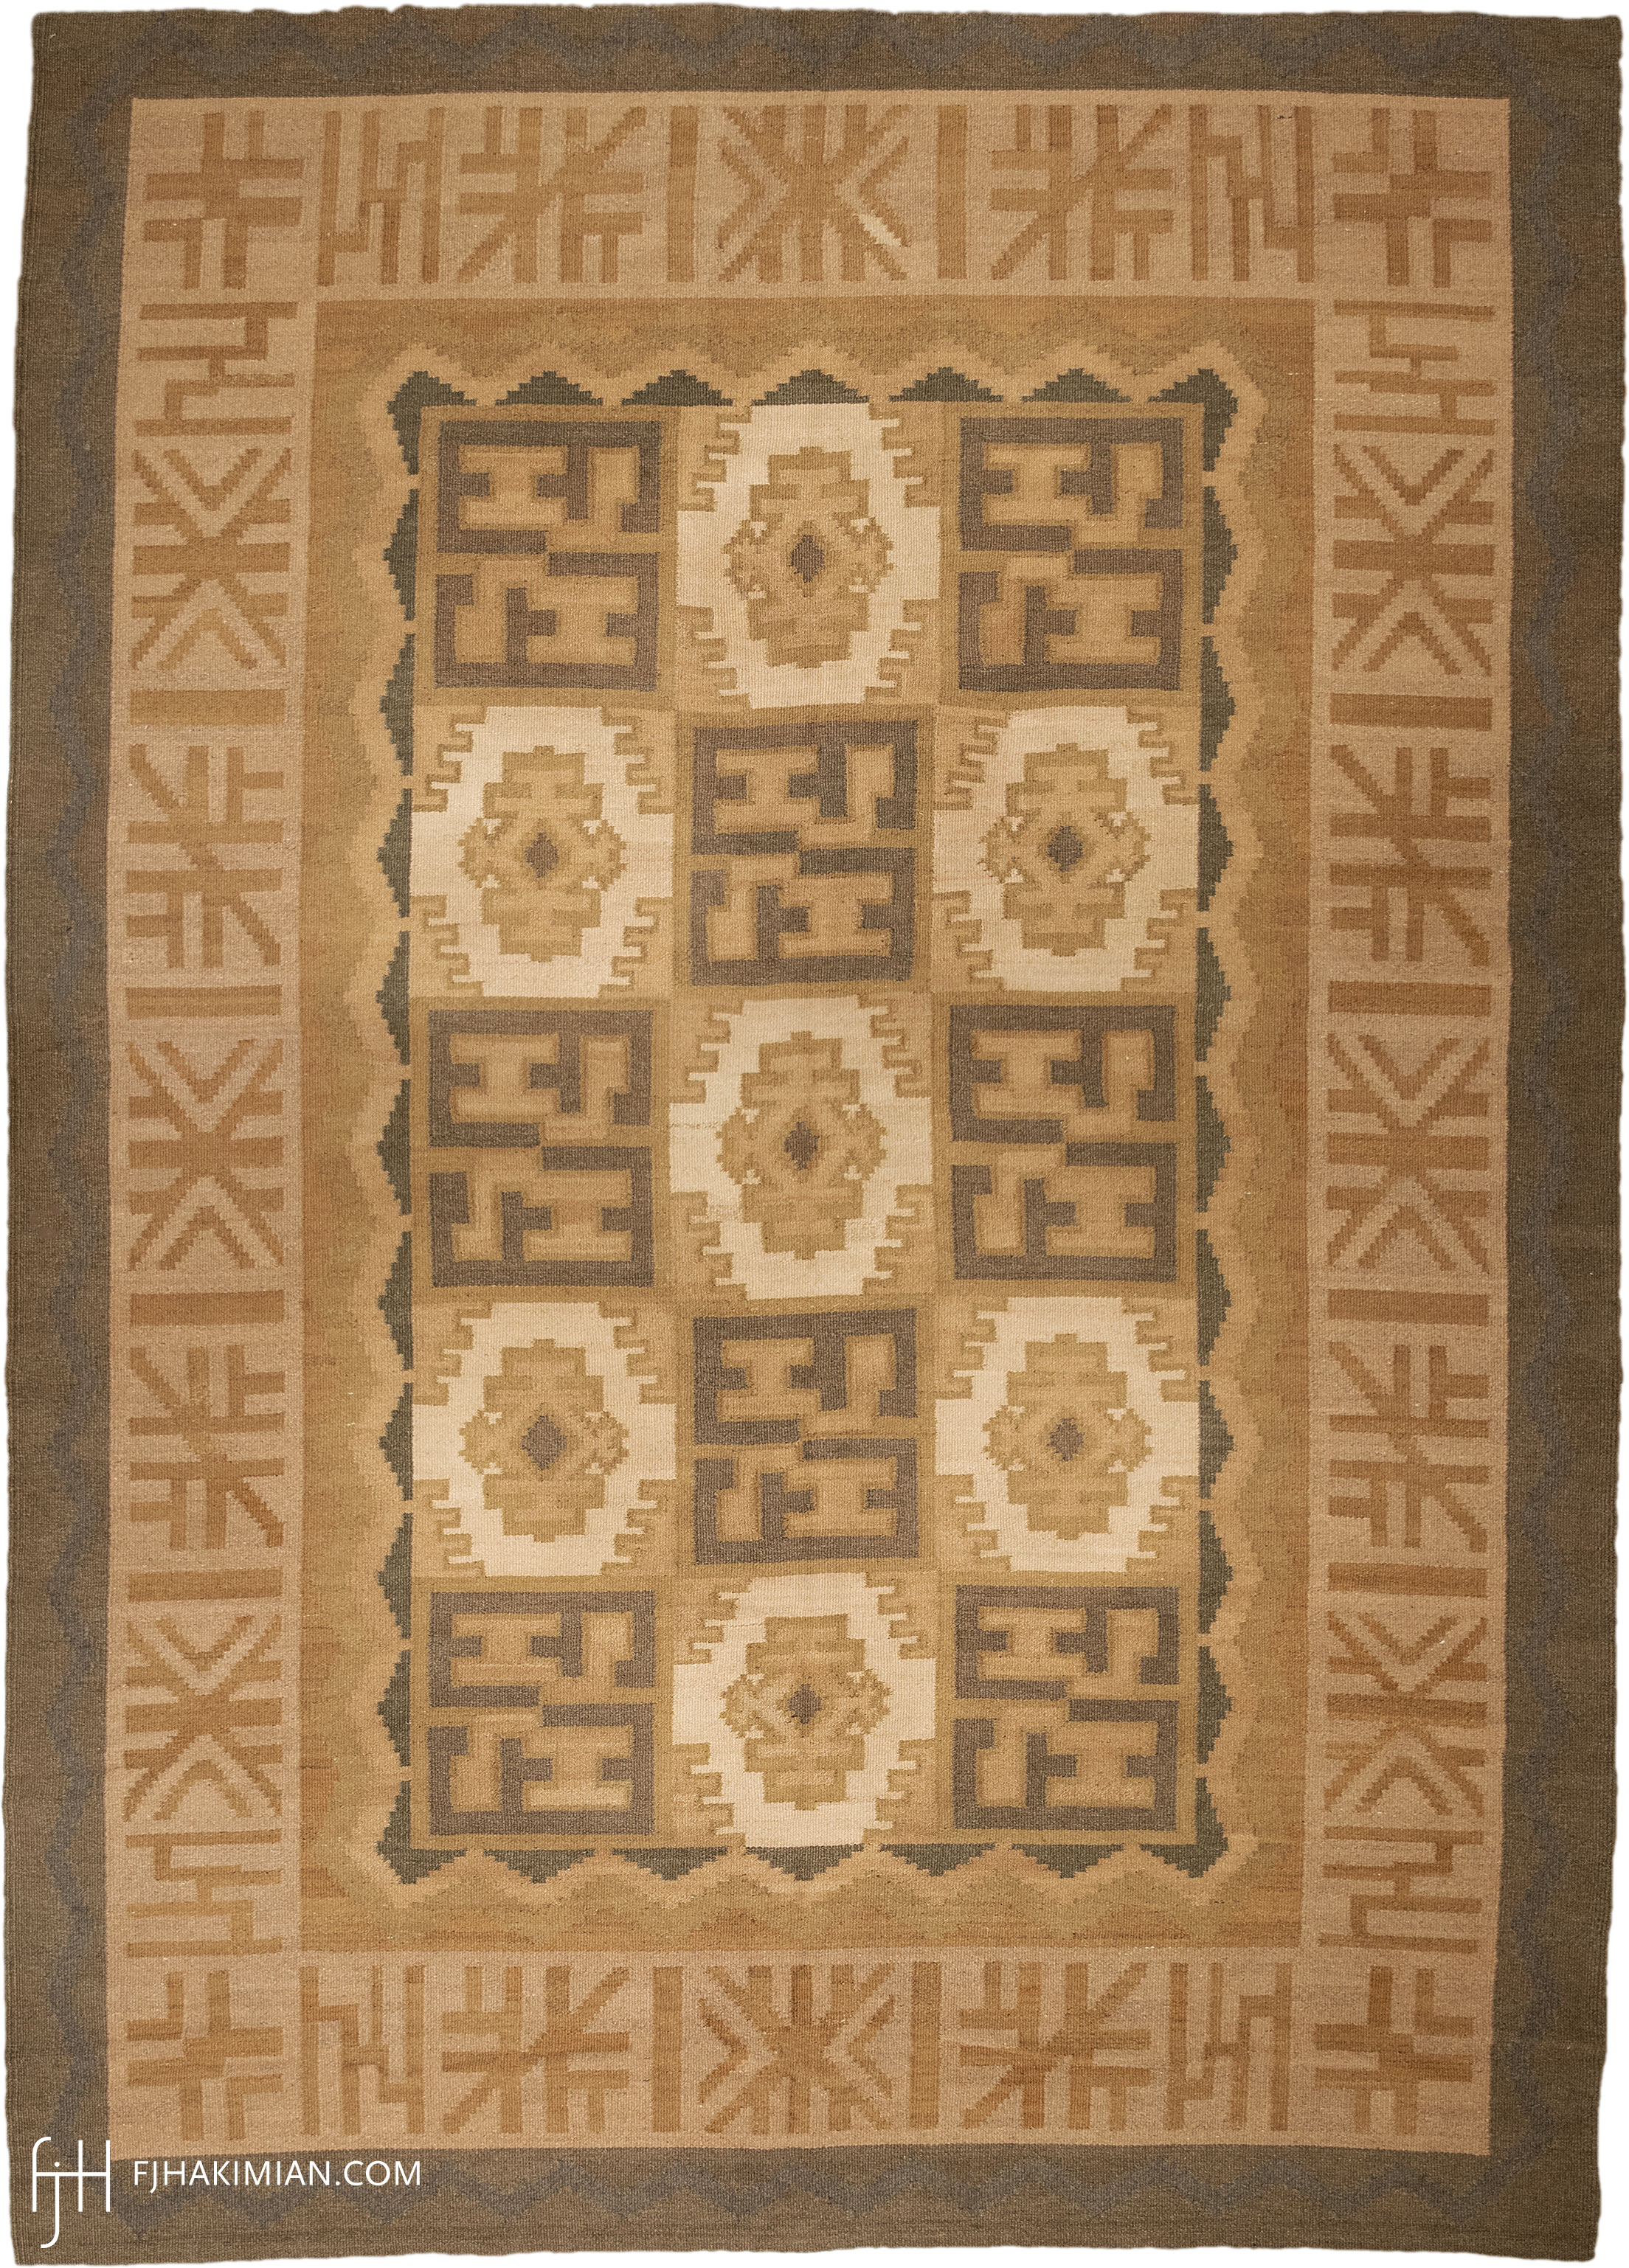 FJ Hakimian | 02837 | Swedish Carpet | Vintage